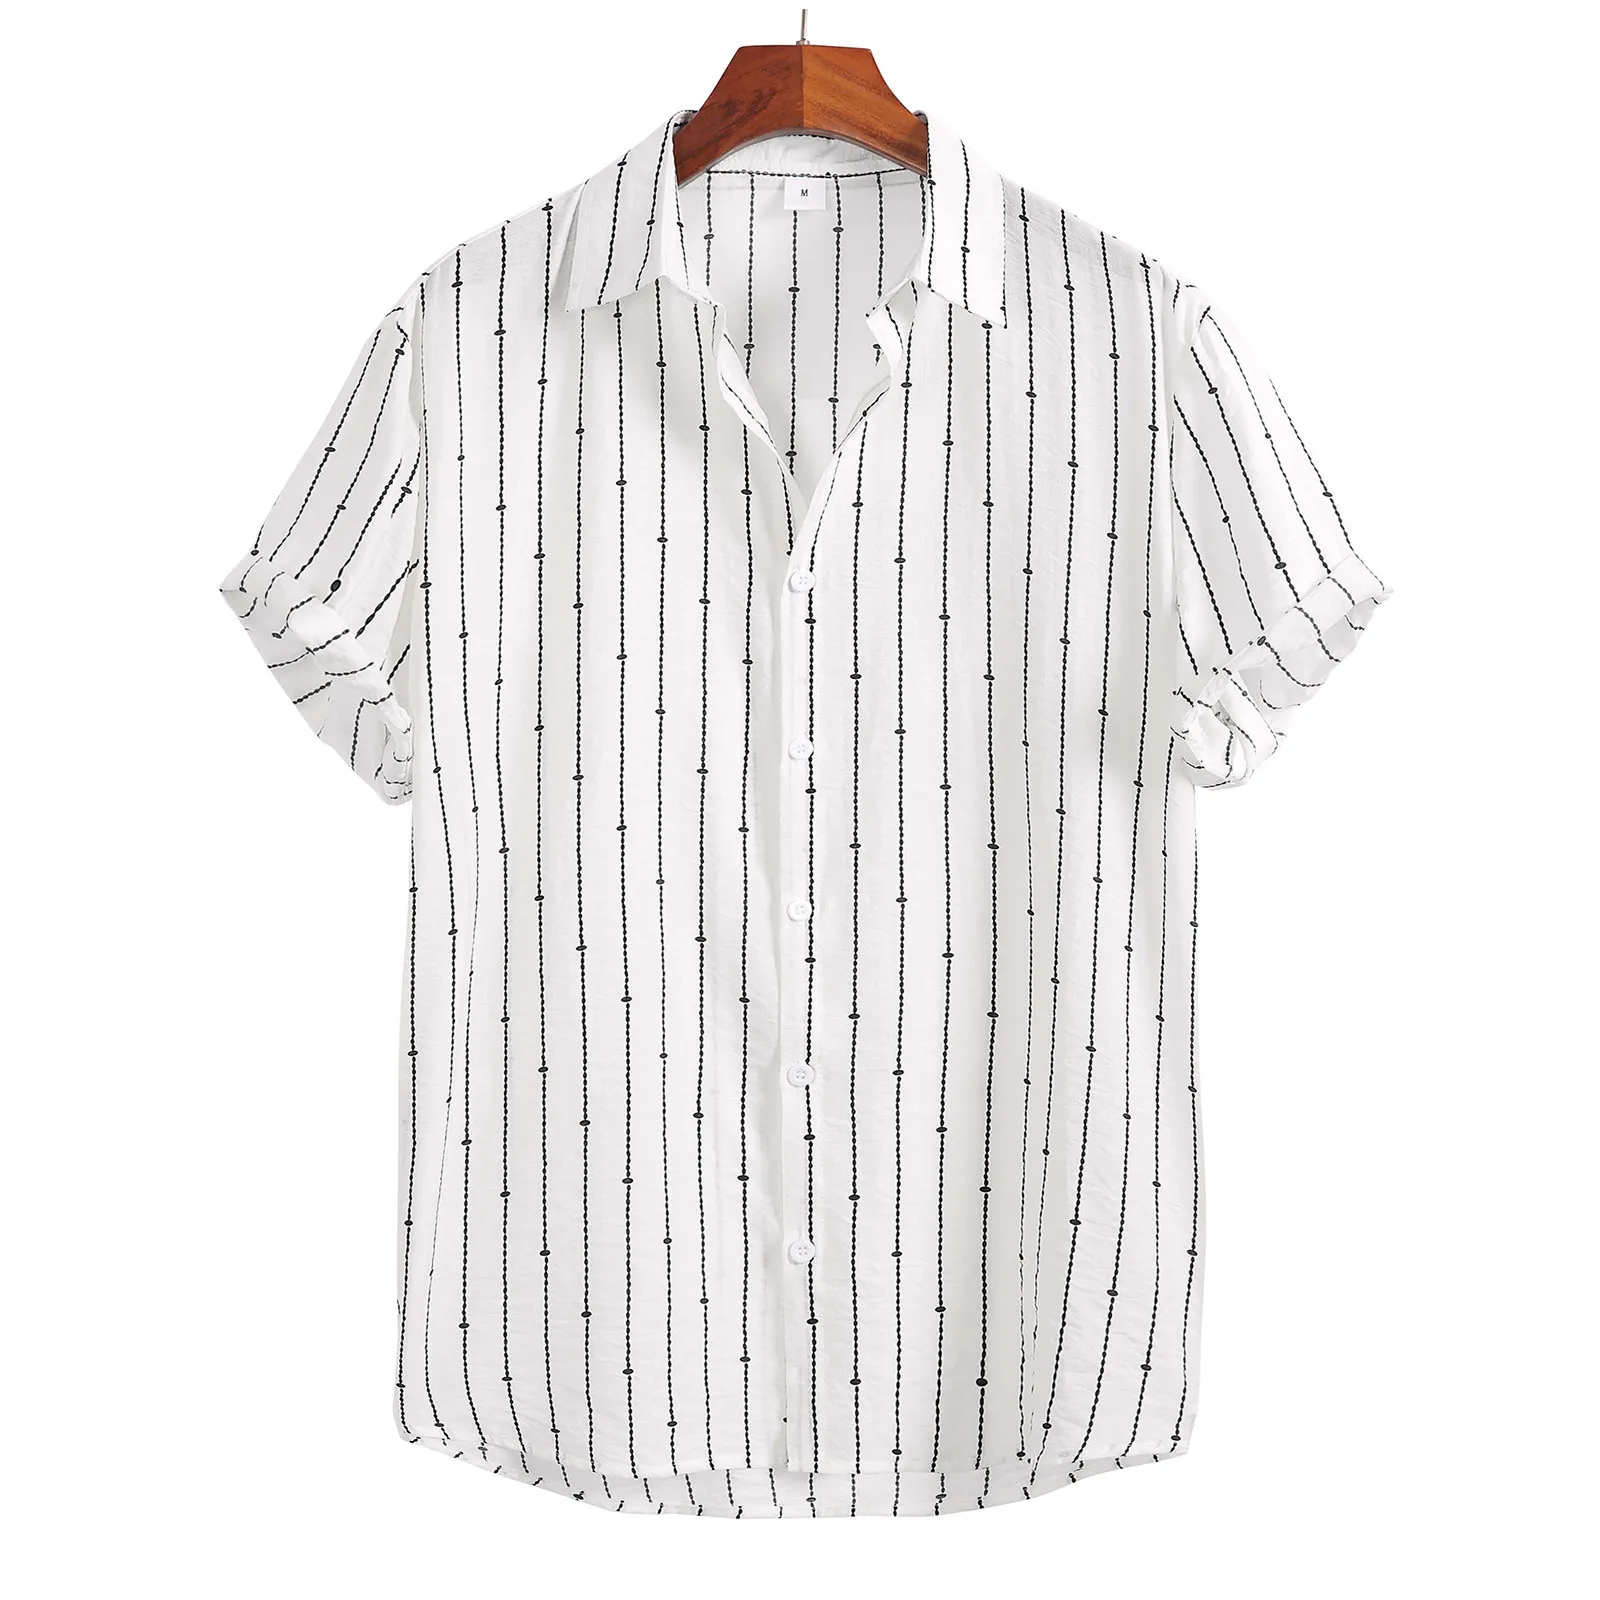 Erkek Gömlek Casual Kore Giyim Erkek Kısa Kollu Gömlek Tek Şerit Baskı erkek gömleği Moda camisas de hombre рубазка